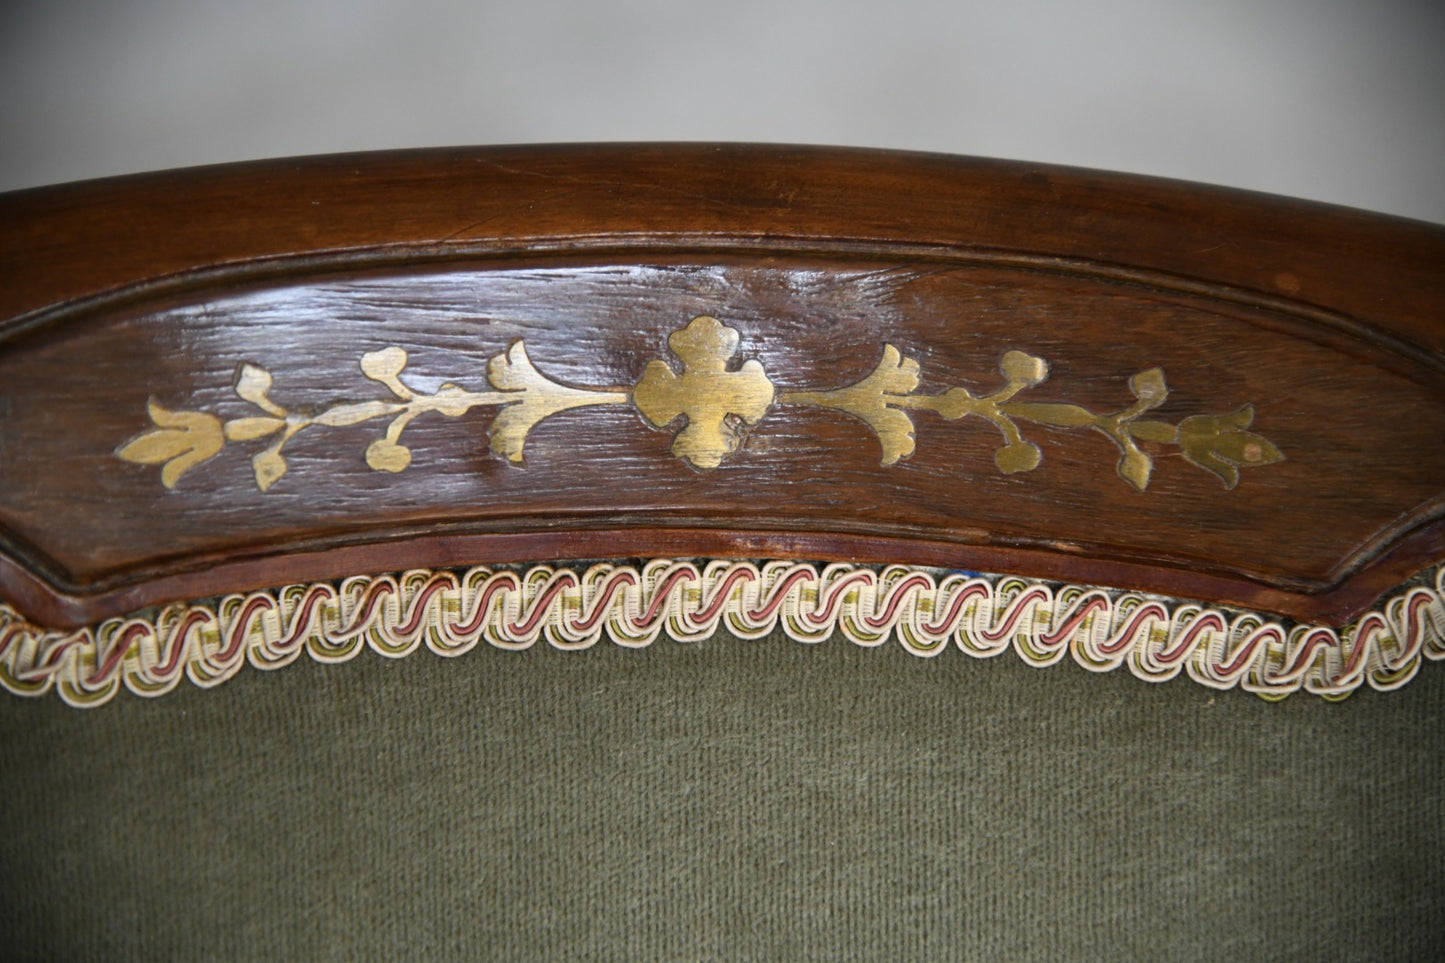 Pair Regency Style Armchairs